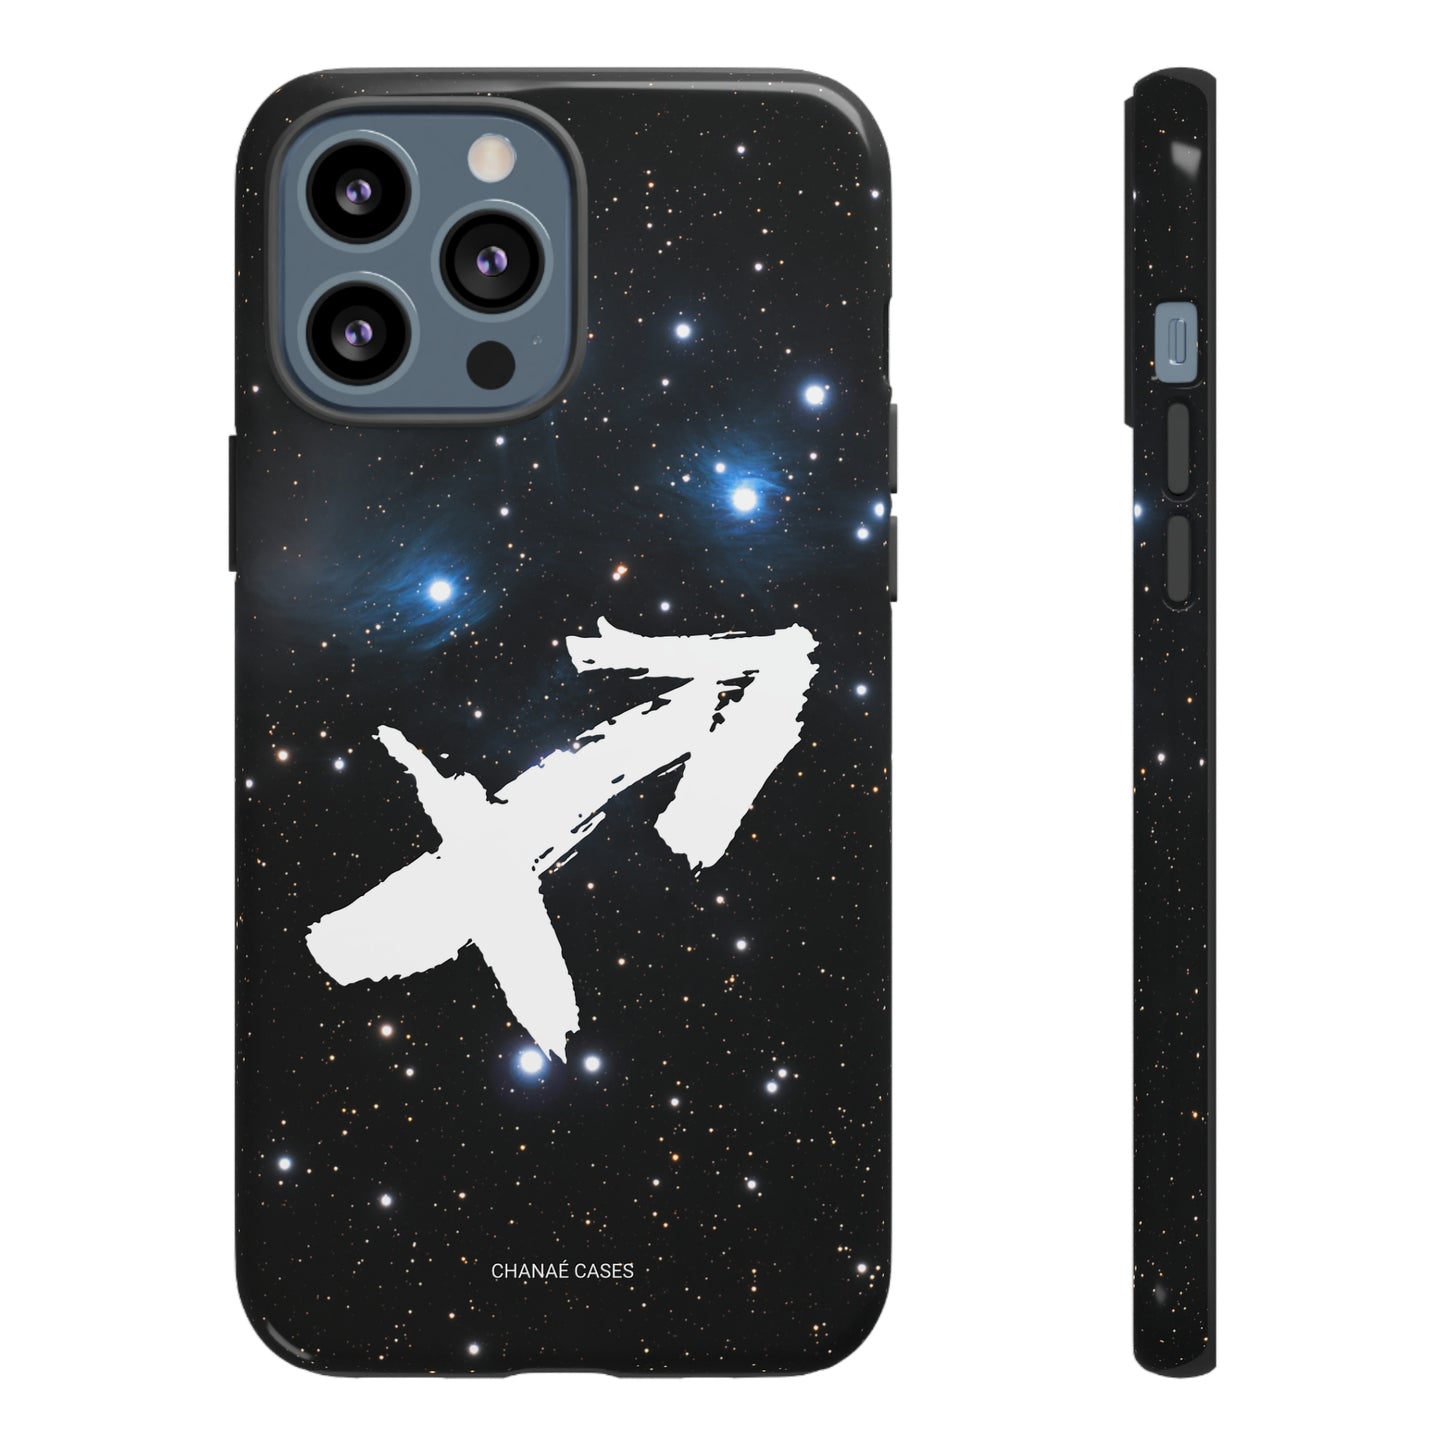 Sagittarius iPhone "Tough" Case (Black)